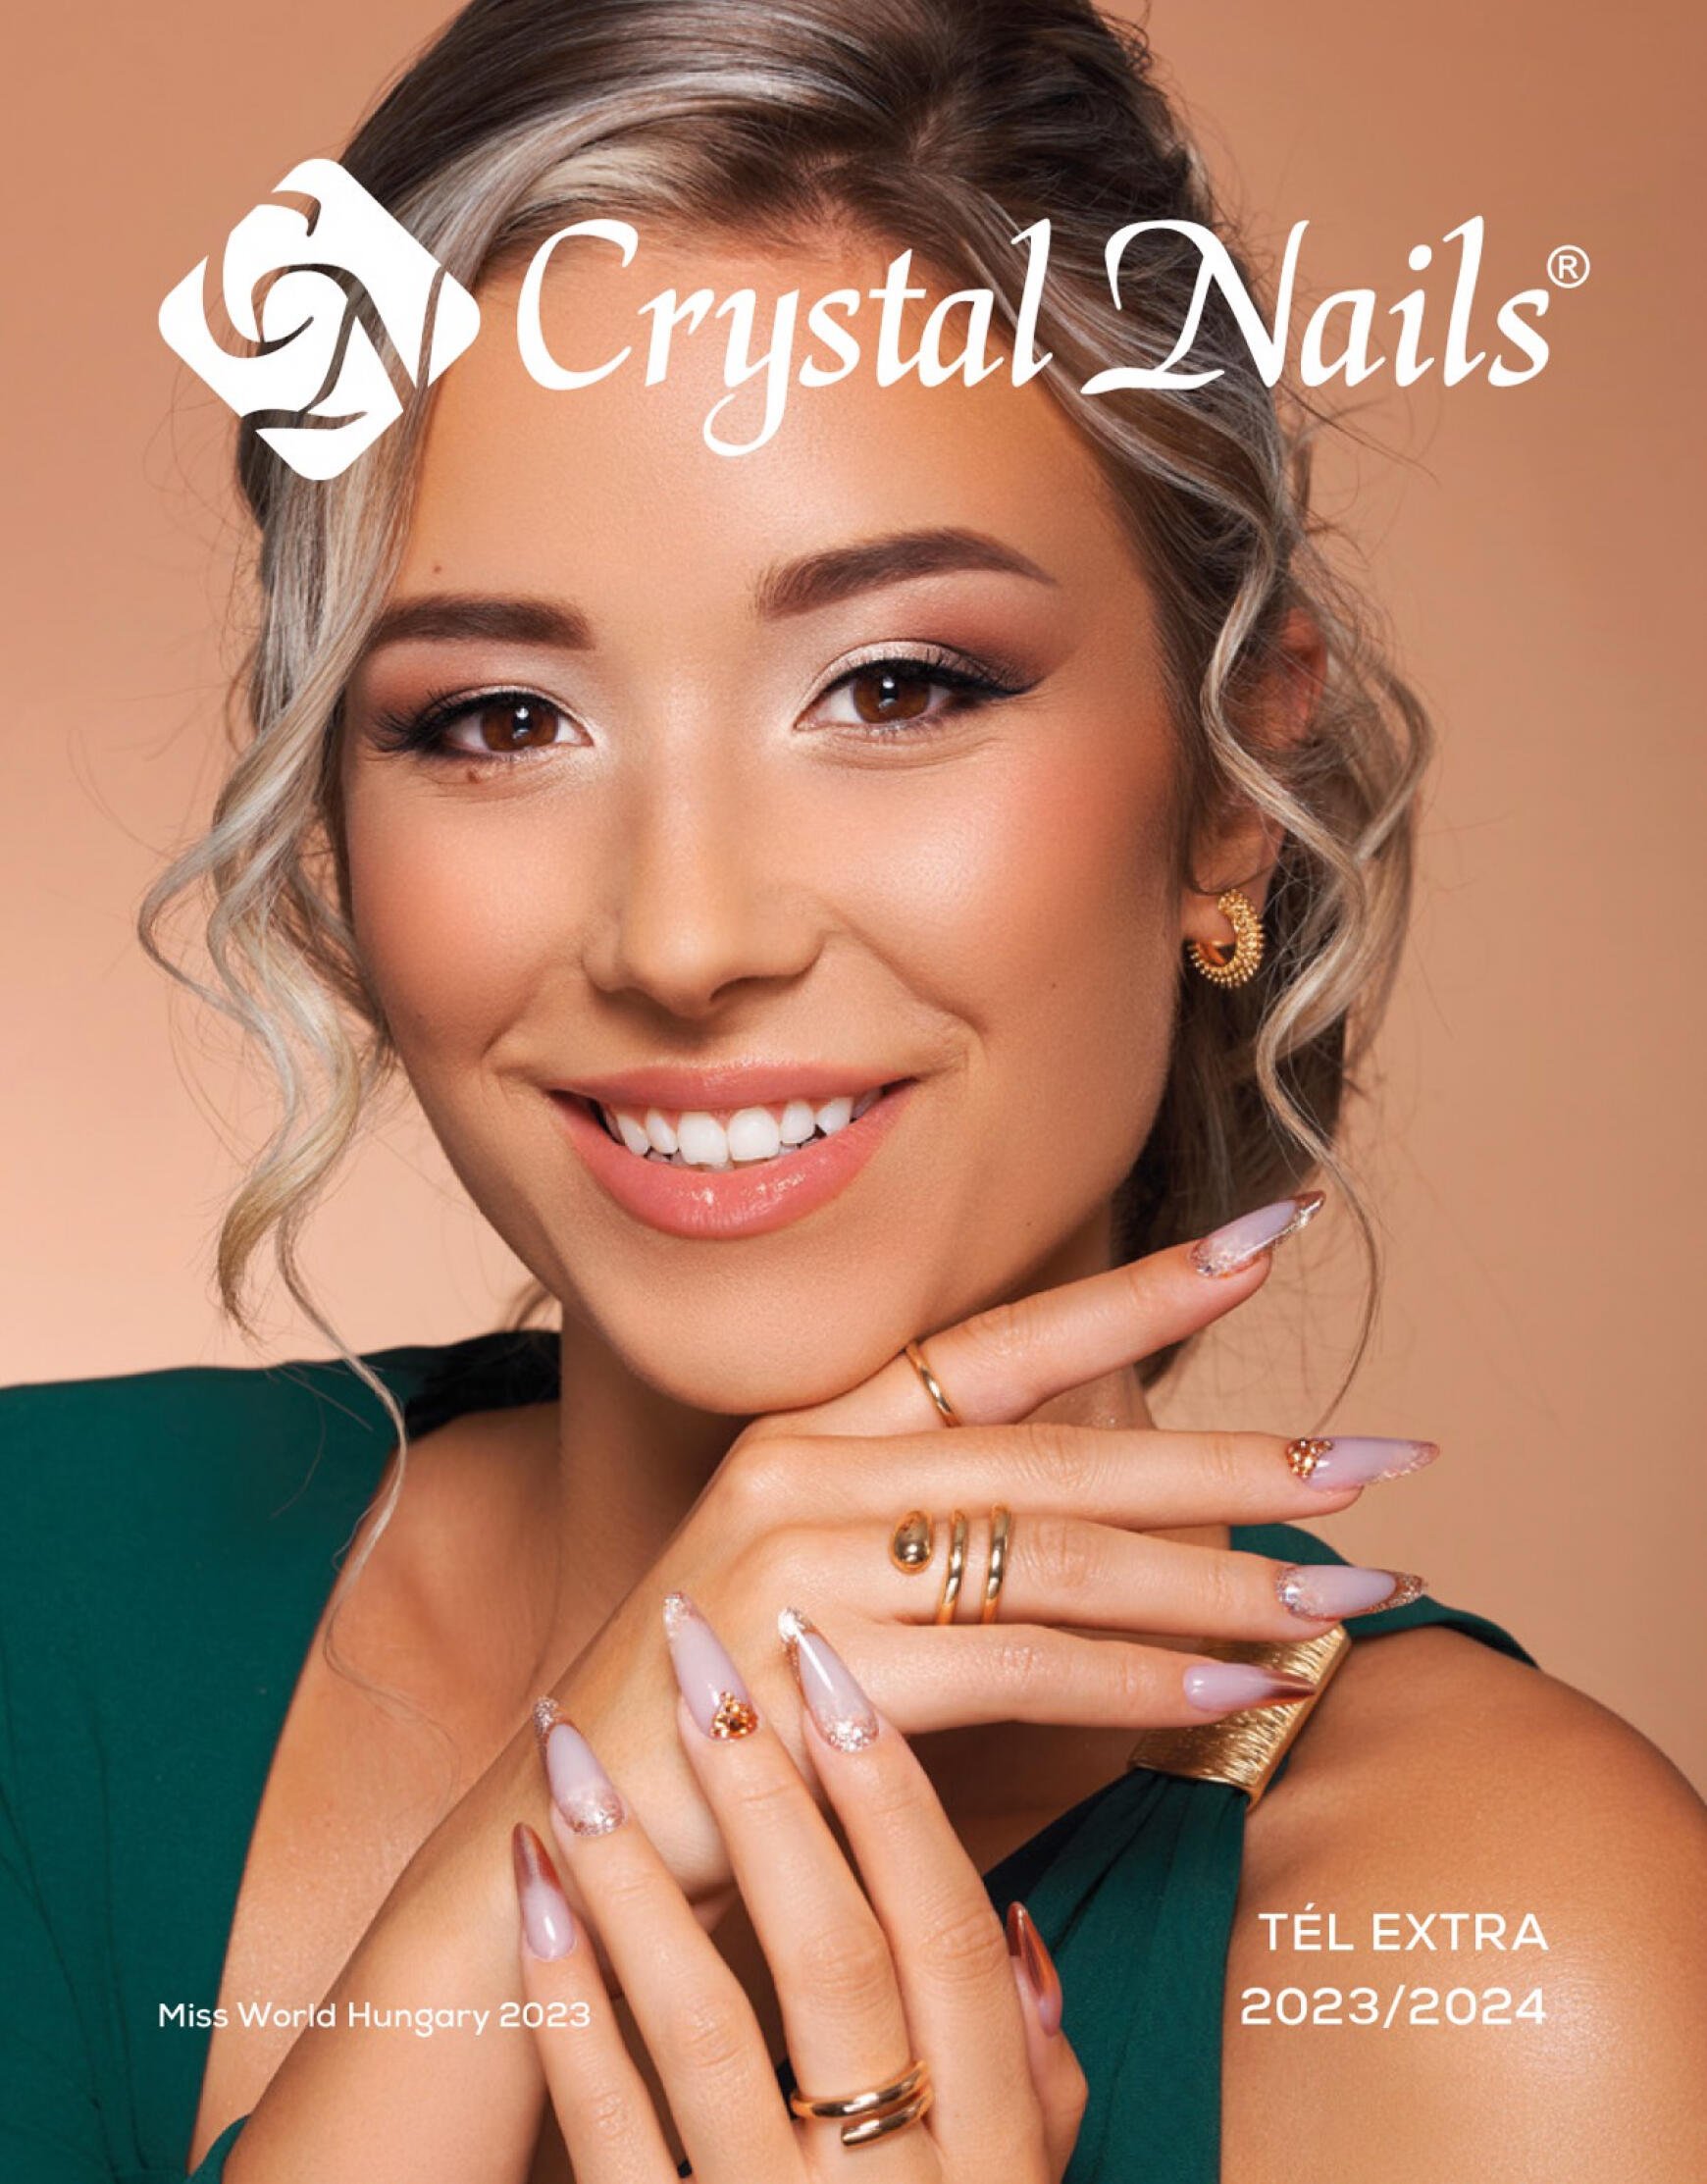 crystal-nails - Crystal Nails 2023/24 TÉL EXTRA katalógus dátumtól érvényes 2024.01.01. - page: 1